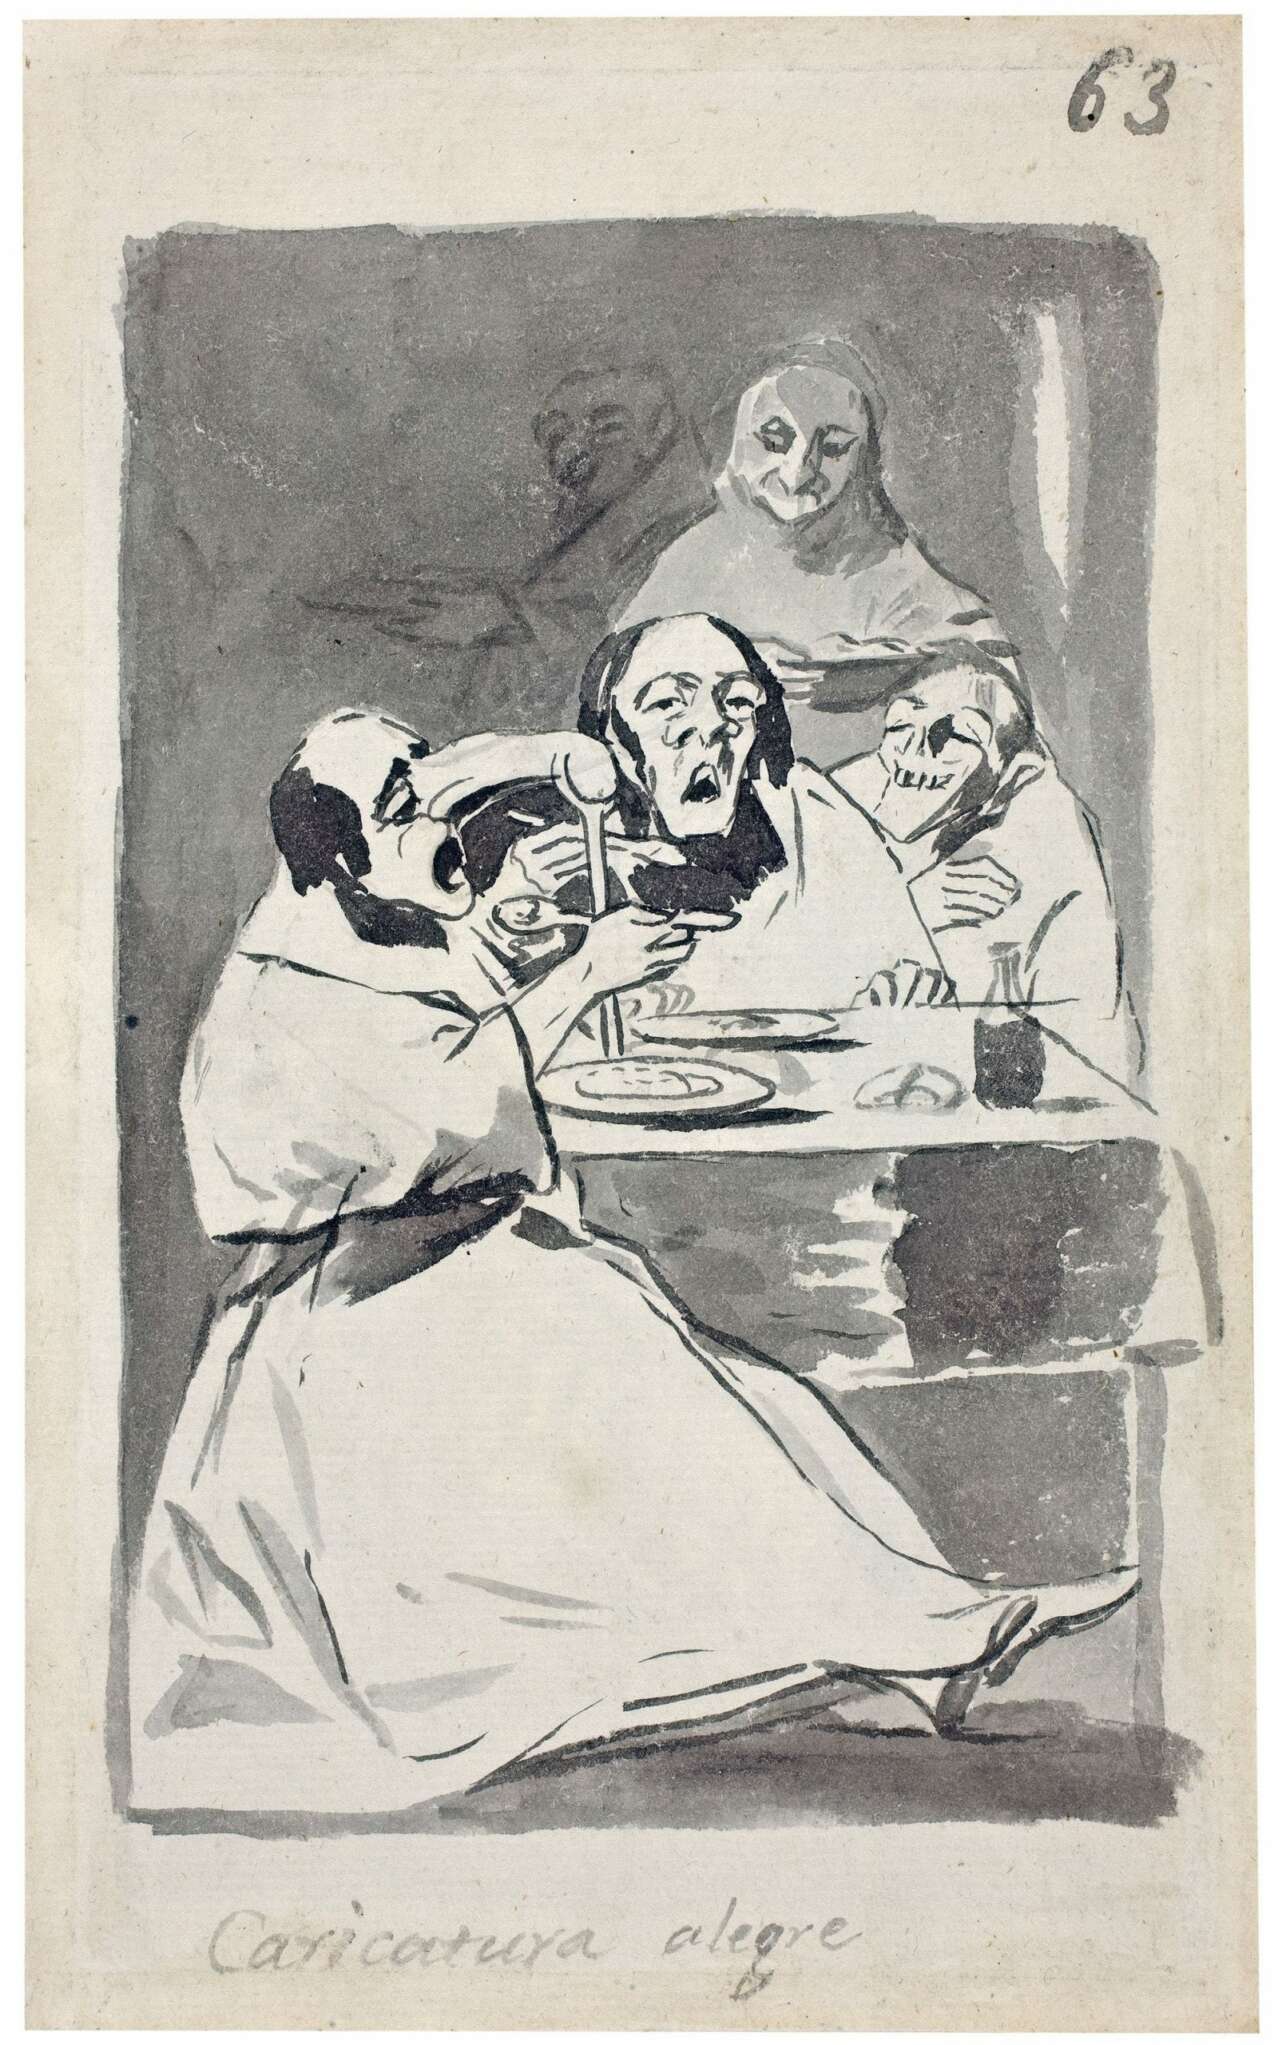 Caricatura alegre Cuaderno de Madrid, Francisco de Goya. Foto: Museo Nacional del Prado.